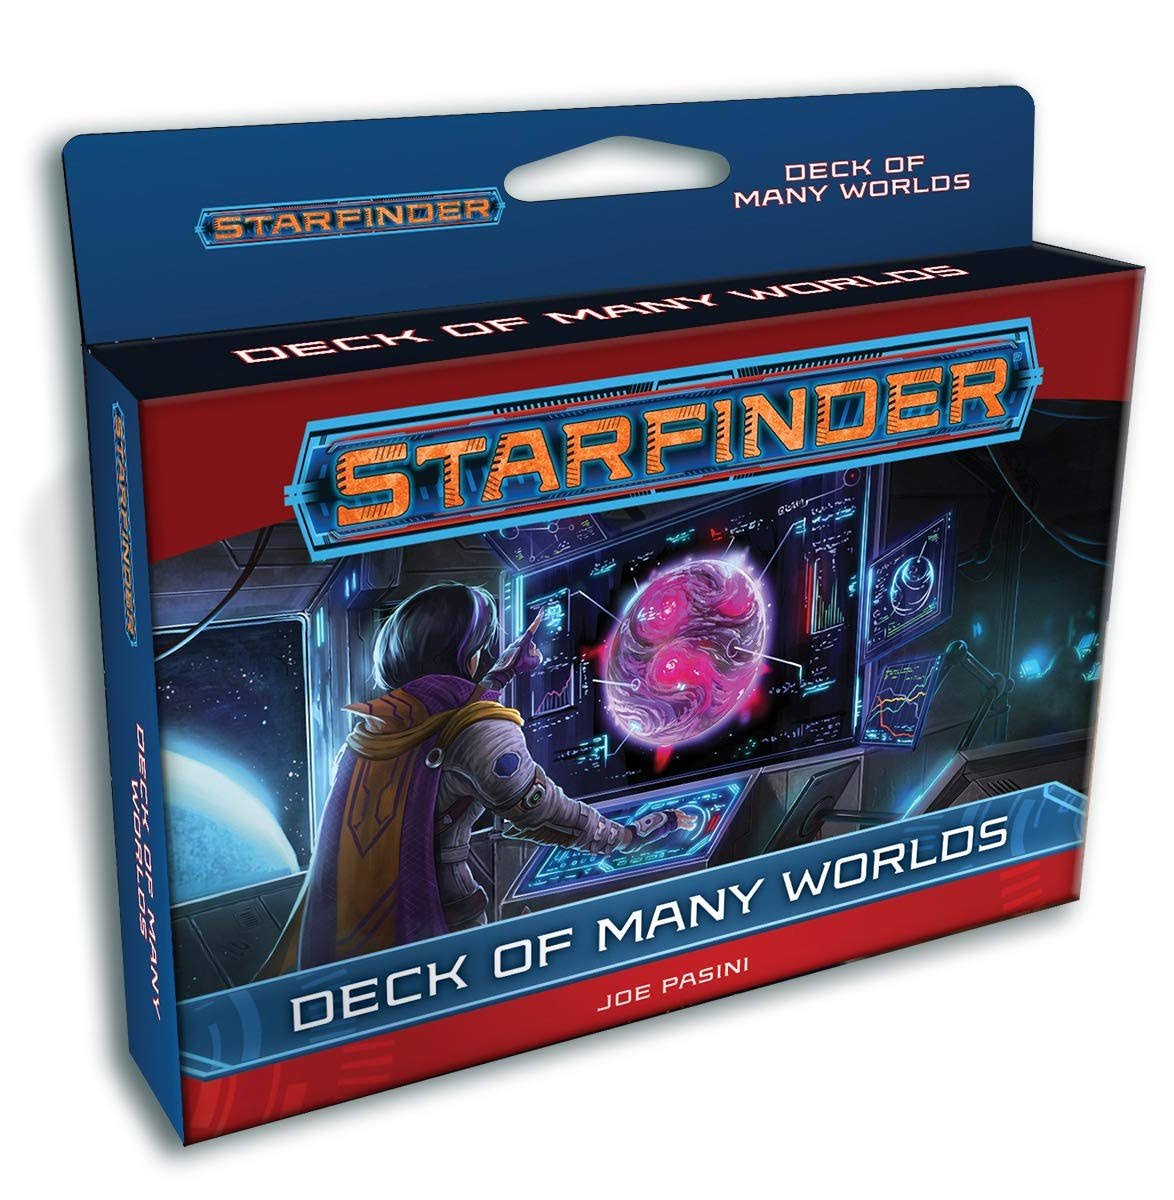 Starfinder Deck of Many Worlds [Book]